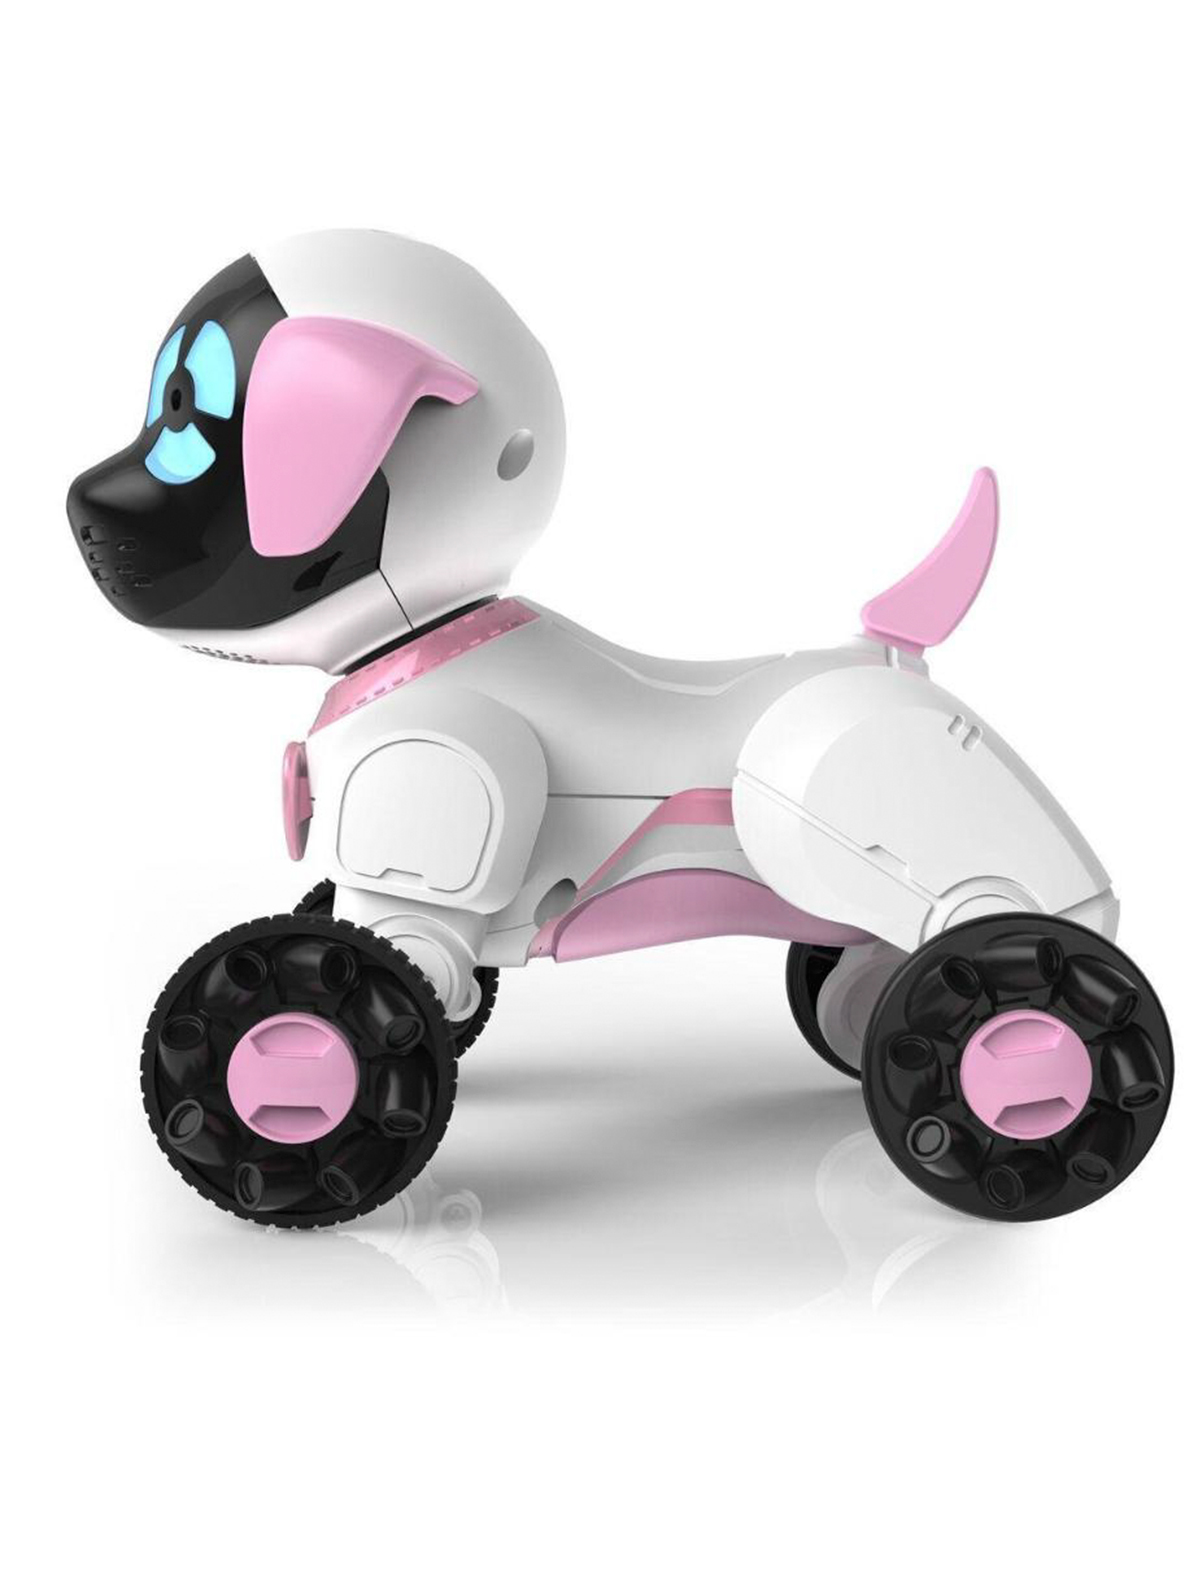 Электрическая собака купить. Робот WOWWEE собачка Чиппи. Робот WOWWEE cобачка Чиппи белая 2804-3811. Робот собака Чиппи WOWWEE белый. Интерактивная собачка WOWWEE Чиппи розовая.